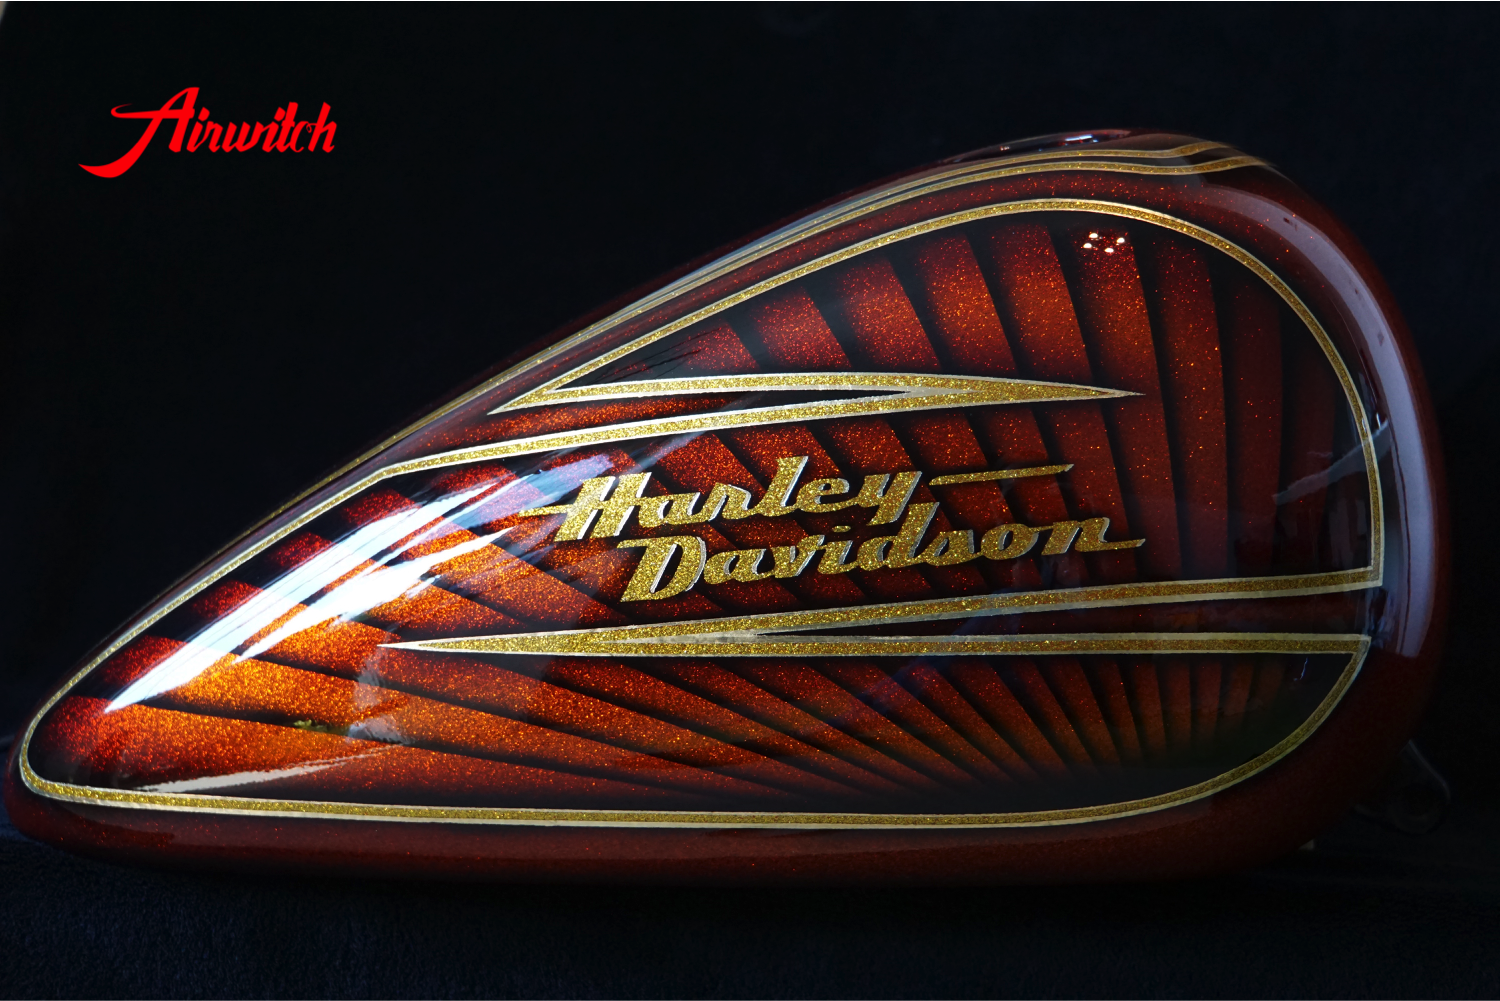 Luxuriöses Tankdesign einer Harley Davidson Tank mit goldenen Metalflakes und Blattgold